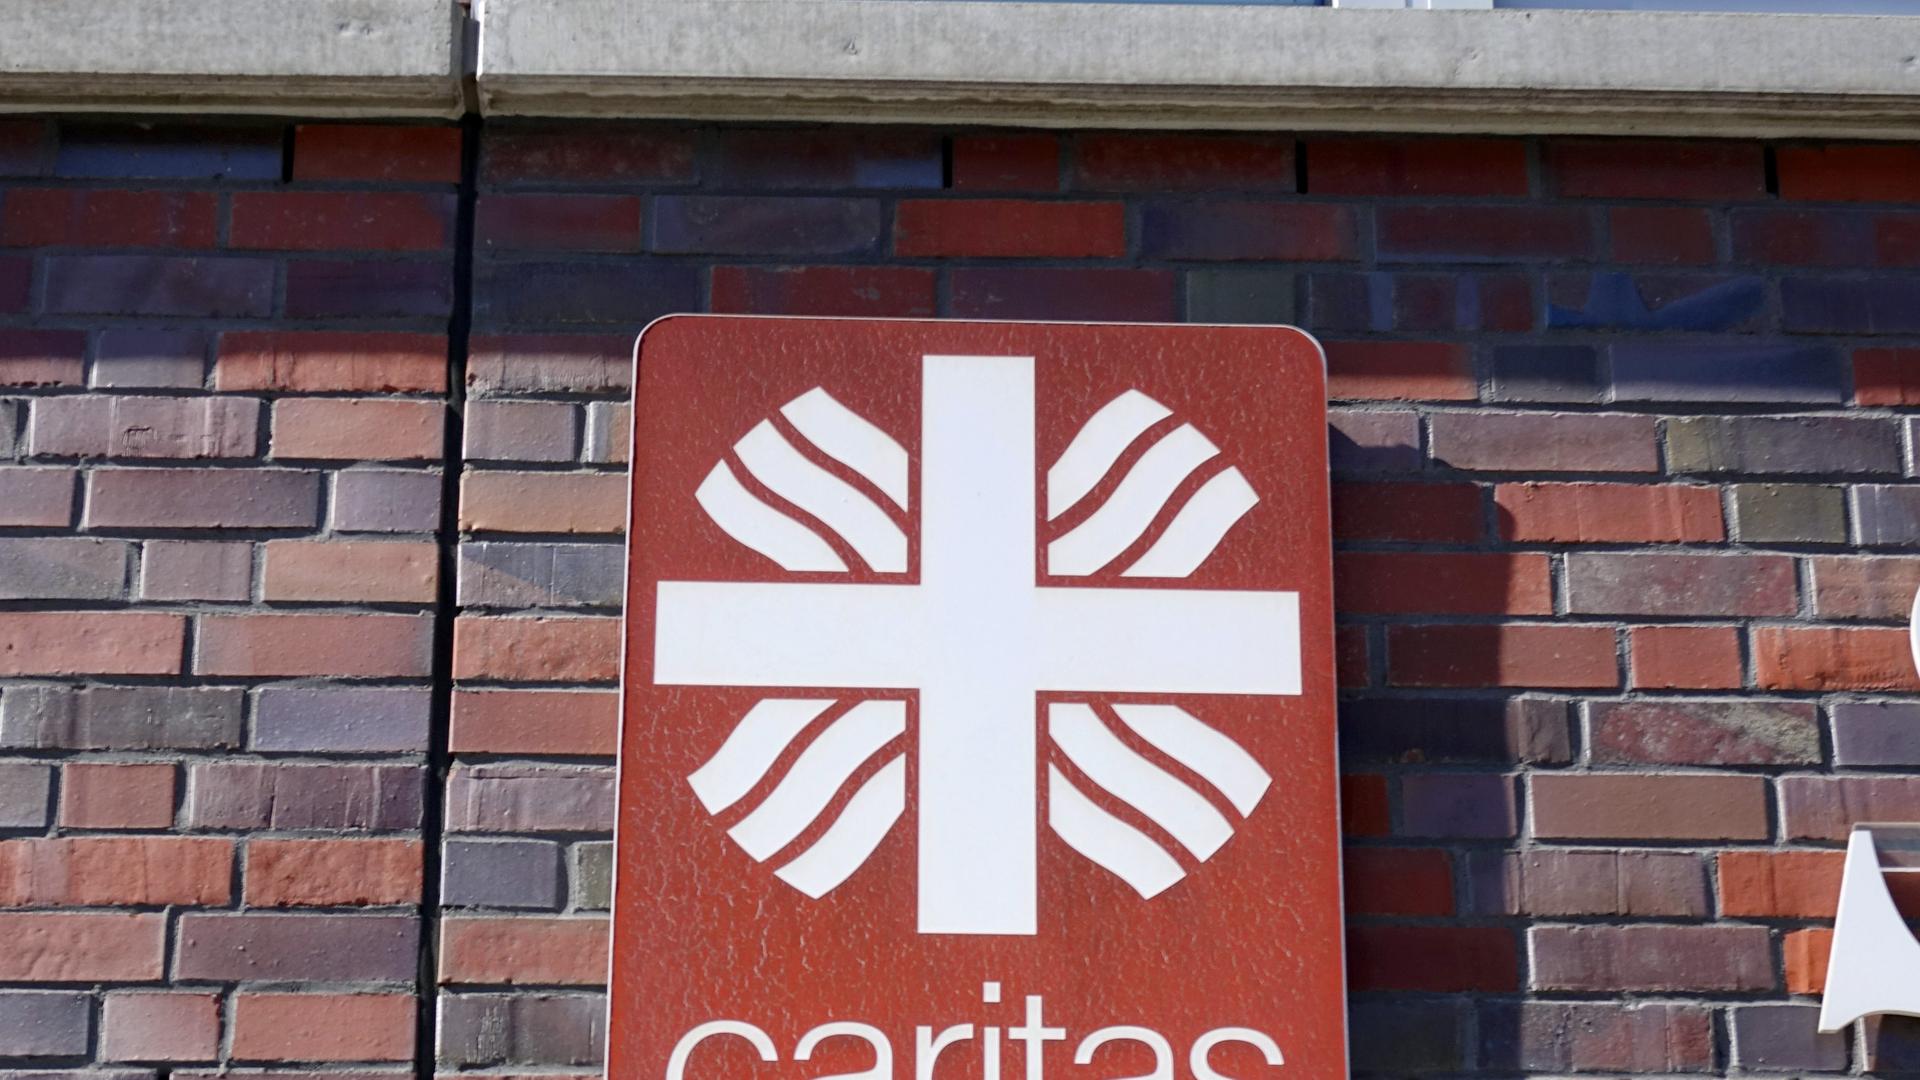 Das Logo der Caritas, des Deutschen Caritasverbandes, hängt an einer Hauswand. Die Caritas ist ein Wohlfahrtsverband der römisch-katholischen Kirche in Deutschland. Er ist als eingetragener Verein organisiert.